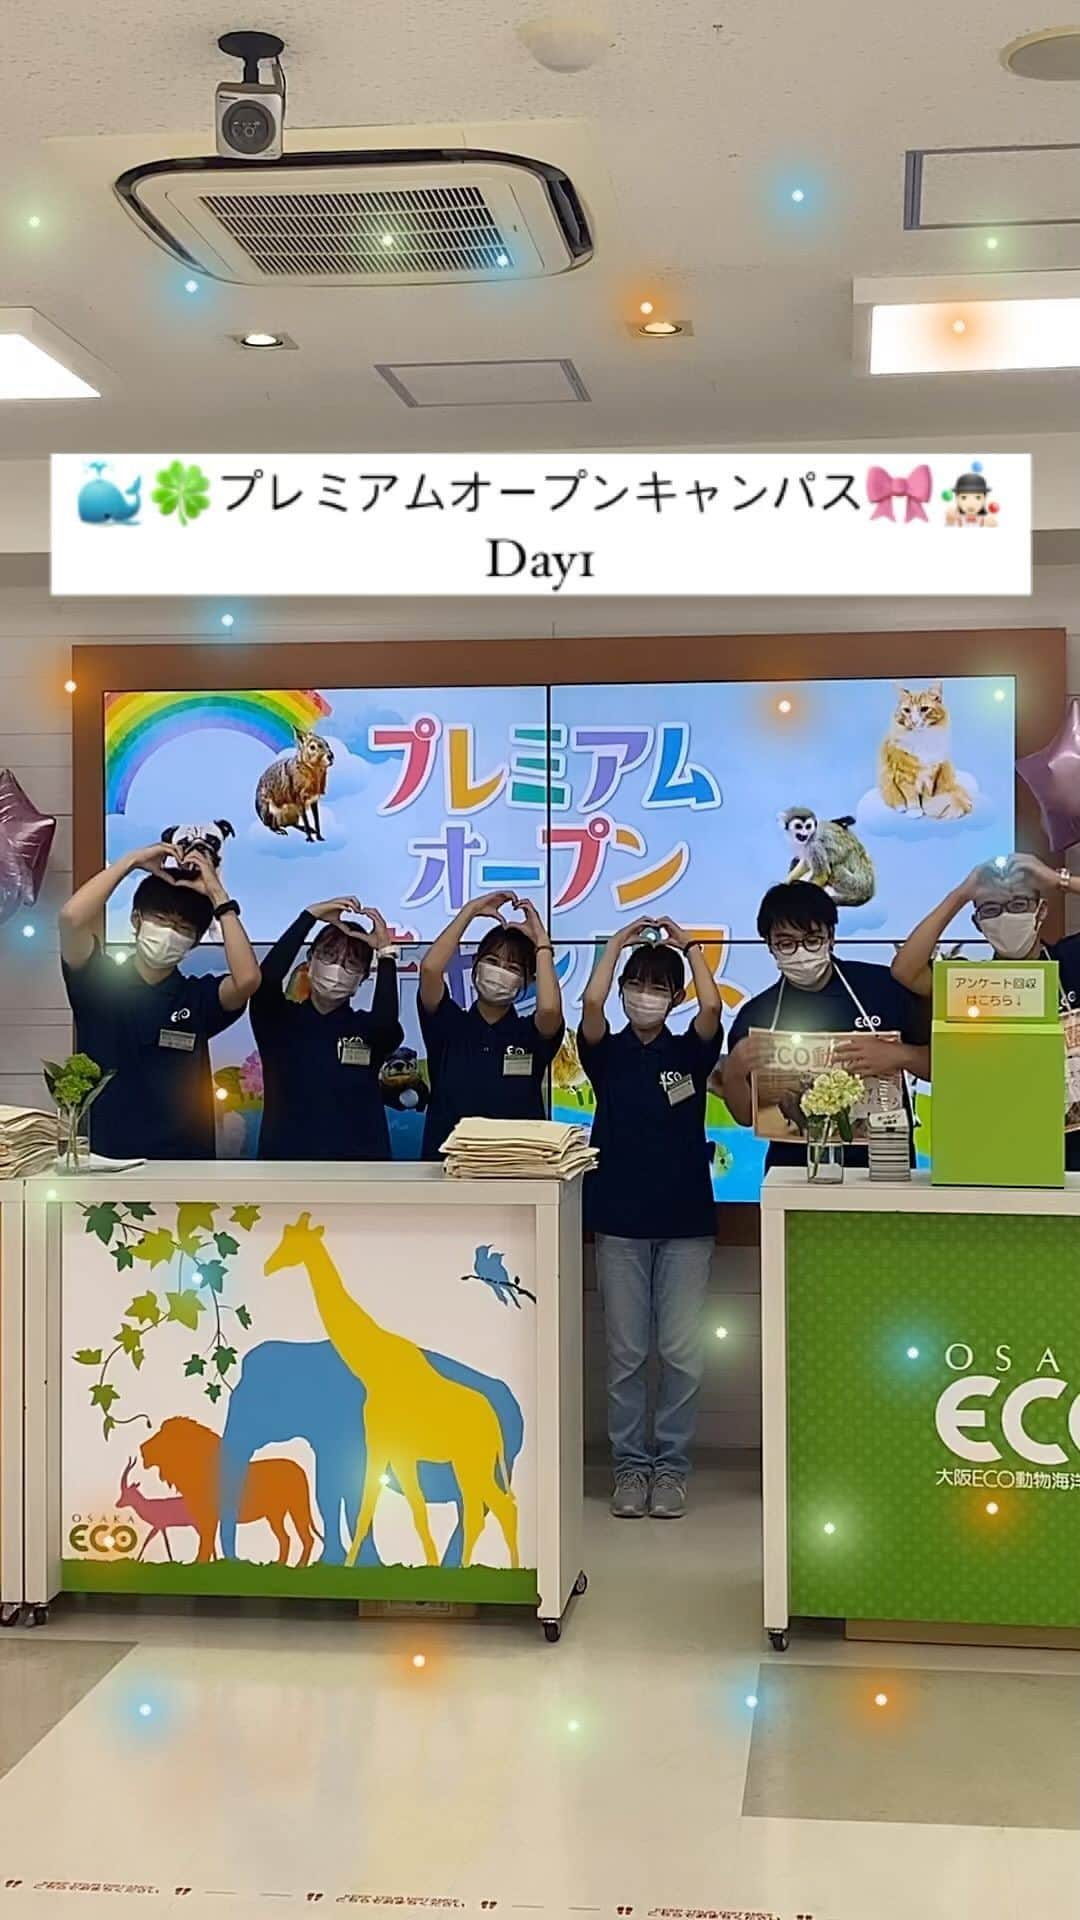 大阪ECO動物海洋専門学校のインスタグラム：「. 🎪🌺プレミアムオープンキャンパス🐕👒 〜Day1〜  大阪ECOのプレミアムオープンキャンパス今日からスタートです！ ２日間に渡るビッグイベント🤹🏻‍♀️☀️🍀  みなさんは何の体験授業が楽しかったですか〜？？🥳🎀 今日の体験を通して動物業界のお仕事のやりがいや面白さを感じて頂けていたら嬉しいです！🧸✨✨  プレミアムオープンキャンパスは明日も続きます！ 明日ご参加される方、お会いできるのを楽しみにお待ちしています✊🏻😉🩷  学校の動物たちはもちろん、 元気いっぱいなECOの学生との交流も楽しみにお越しください〜🌼🌈🐣  #プレミアムオープンキャンパス #大阪eco動物海洋専門学校#大阪eco  #動物専門学校  #動物飼育 #動物園 #水族館 #飼育員 #ドルフィントレーナー #アクアリスト #動物看護師 #トリマー #ドッグトレーナー#動物好きと繋がりたい#犬好きと繋がりたい #動物園・水族館&テクノロジー専攻 #eco自然環境クリエーター専攻 #ペットマネジメント&ホスピタリティ専攻 #動物園・動物飼育専攻 #水族館アクアリスト専攻 #ドルフィントレーナー専攻専攻 #動物看護師専攻 #ペットトリマー&エステティシャン専攻 #ドッグトレーナー専攻」